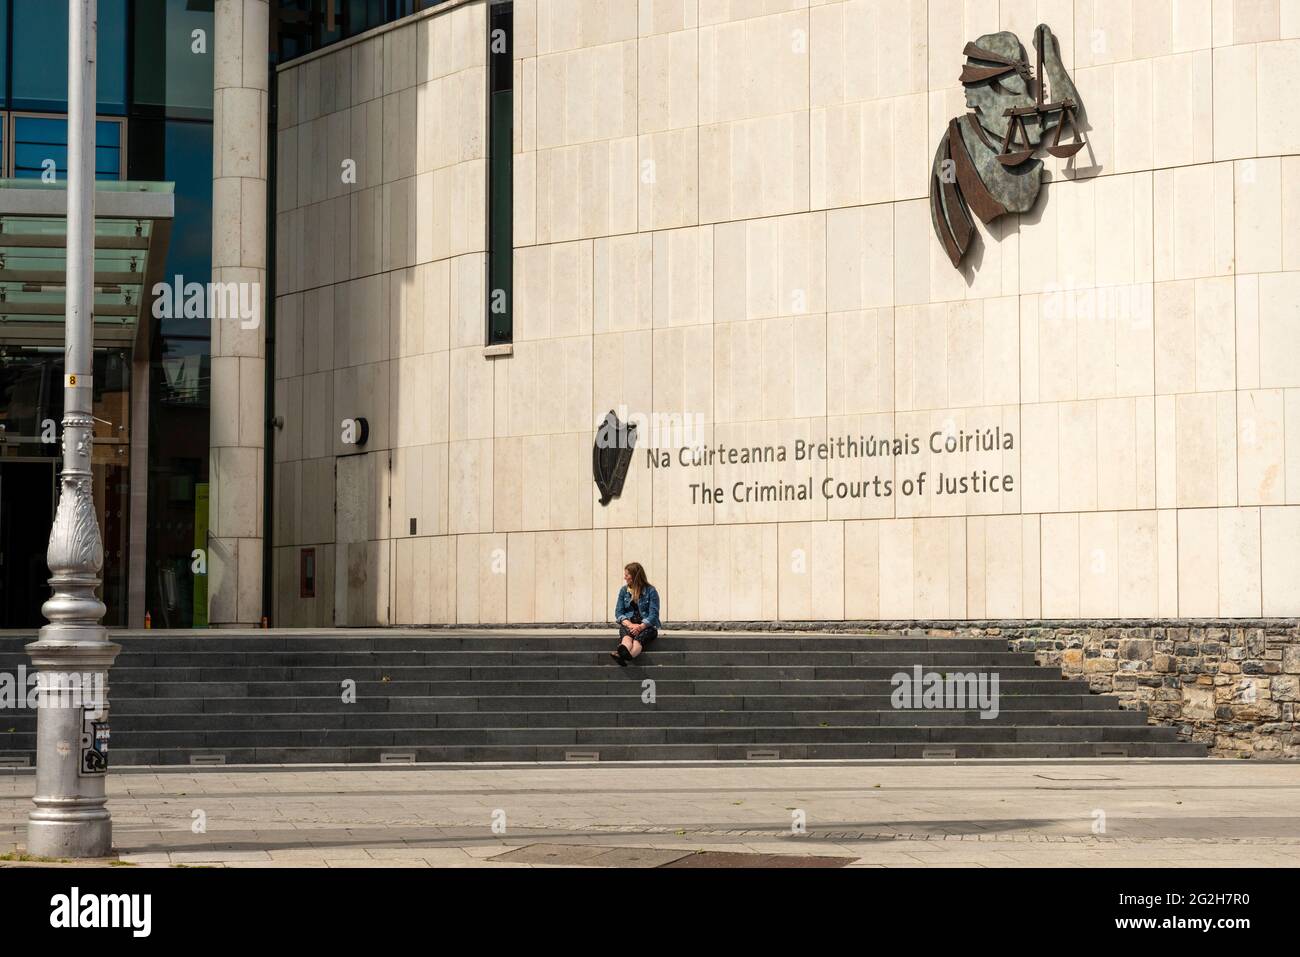 Cour Irlande les cours pénales de justice et une jeune femme seule assise sur les escaliers de la Cour pénale de Dublin, Irlande à partir de juin 2021 Banque D'Images